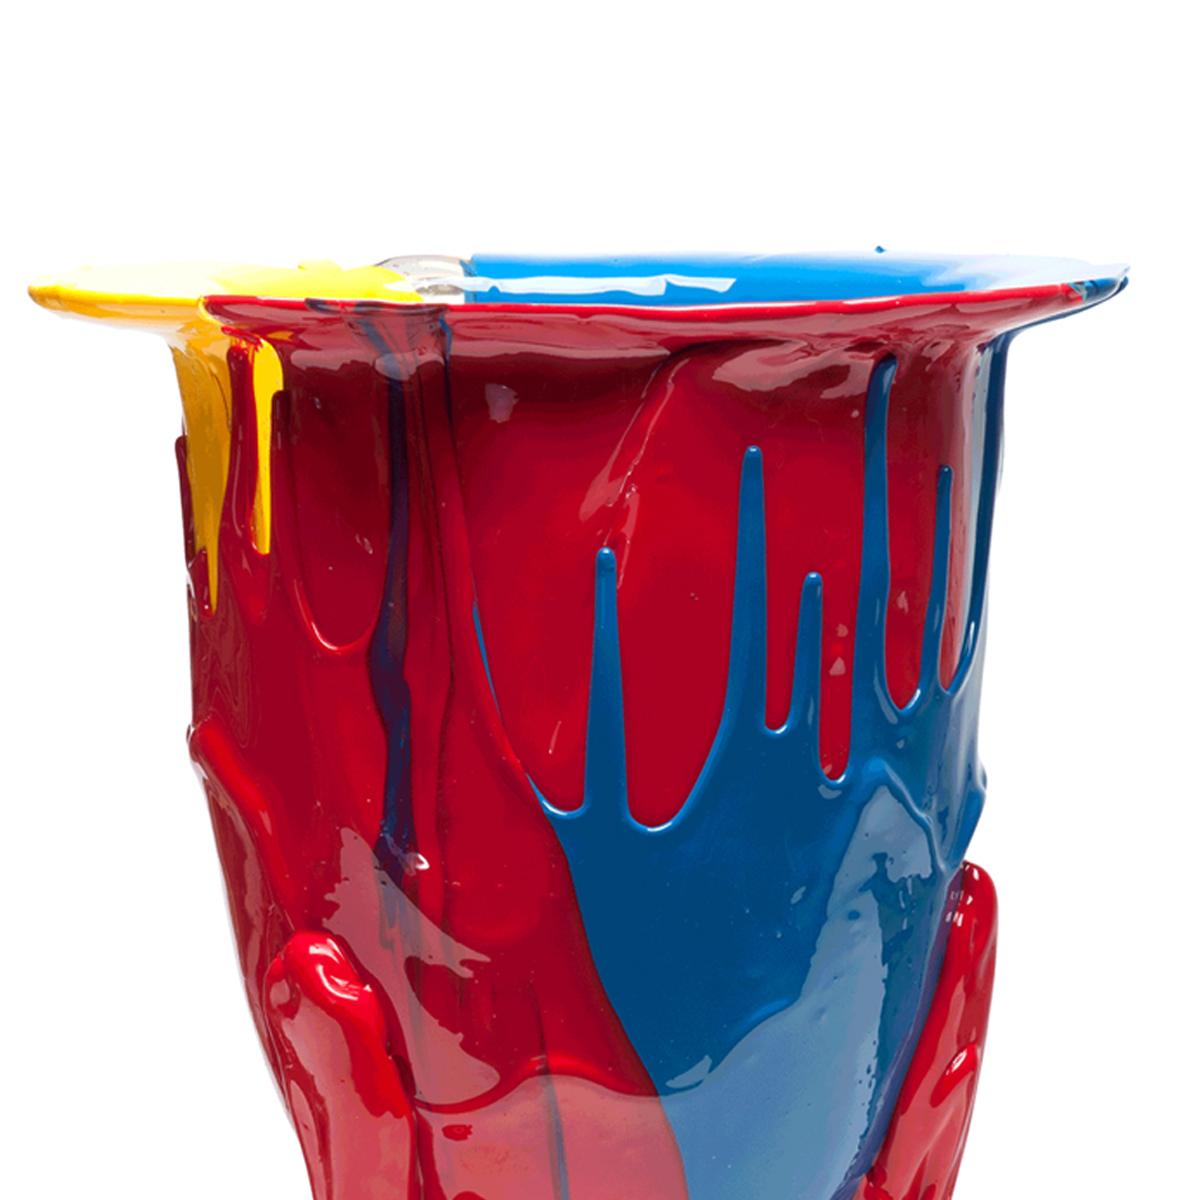 Vase Amazonia, bleu, rouge, jaune. La première pièce qui a donné le coup d'envoi de la collection.
Vase en résine souple conçu par Gaetano Pesce en 1995 pour la collection Fish Design.

Mesures : M- Ø 16cm x H 26cm

Autres tailles